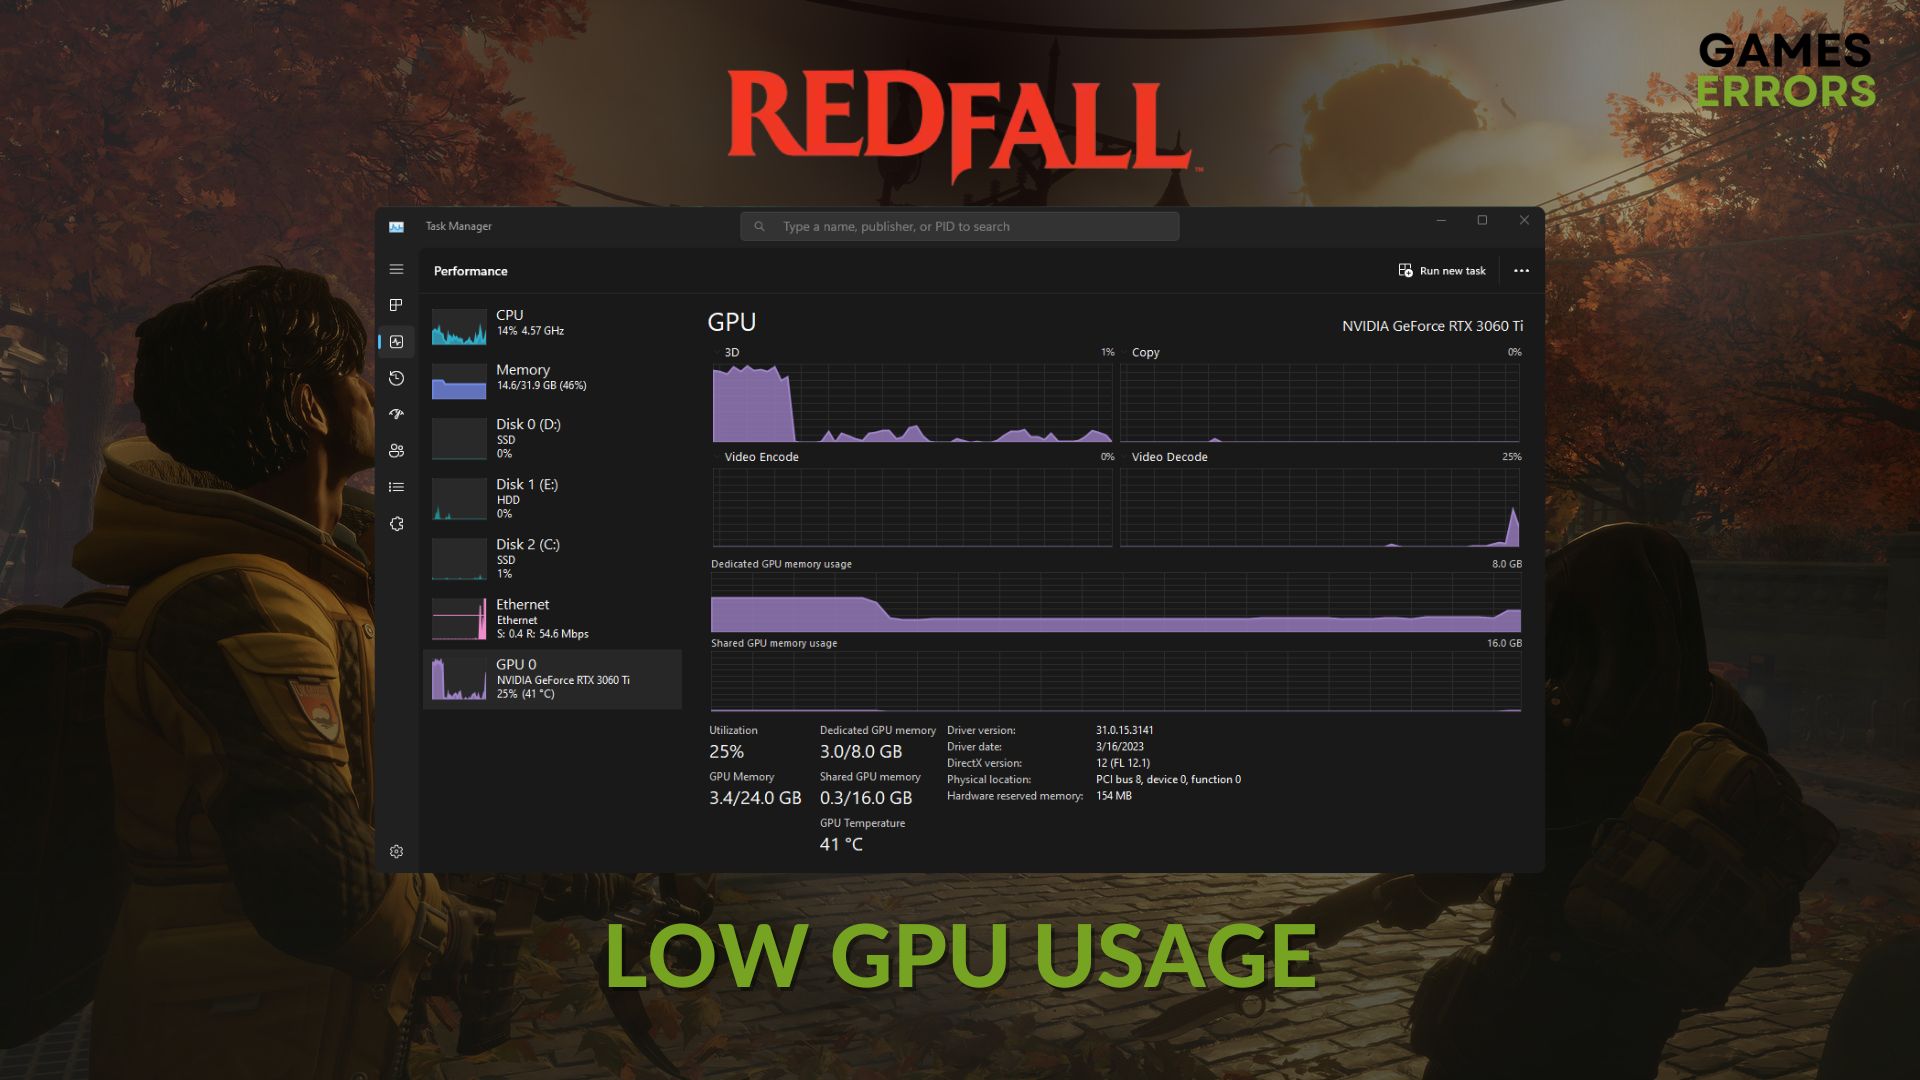 how to fix redfall low gpu usage